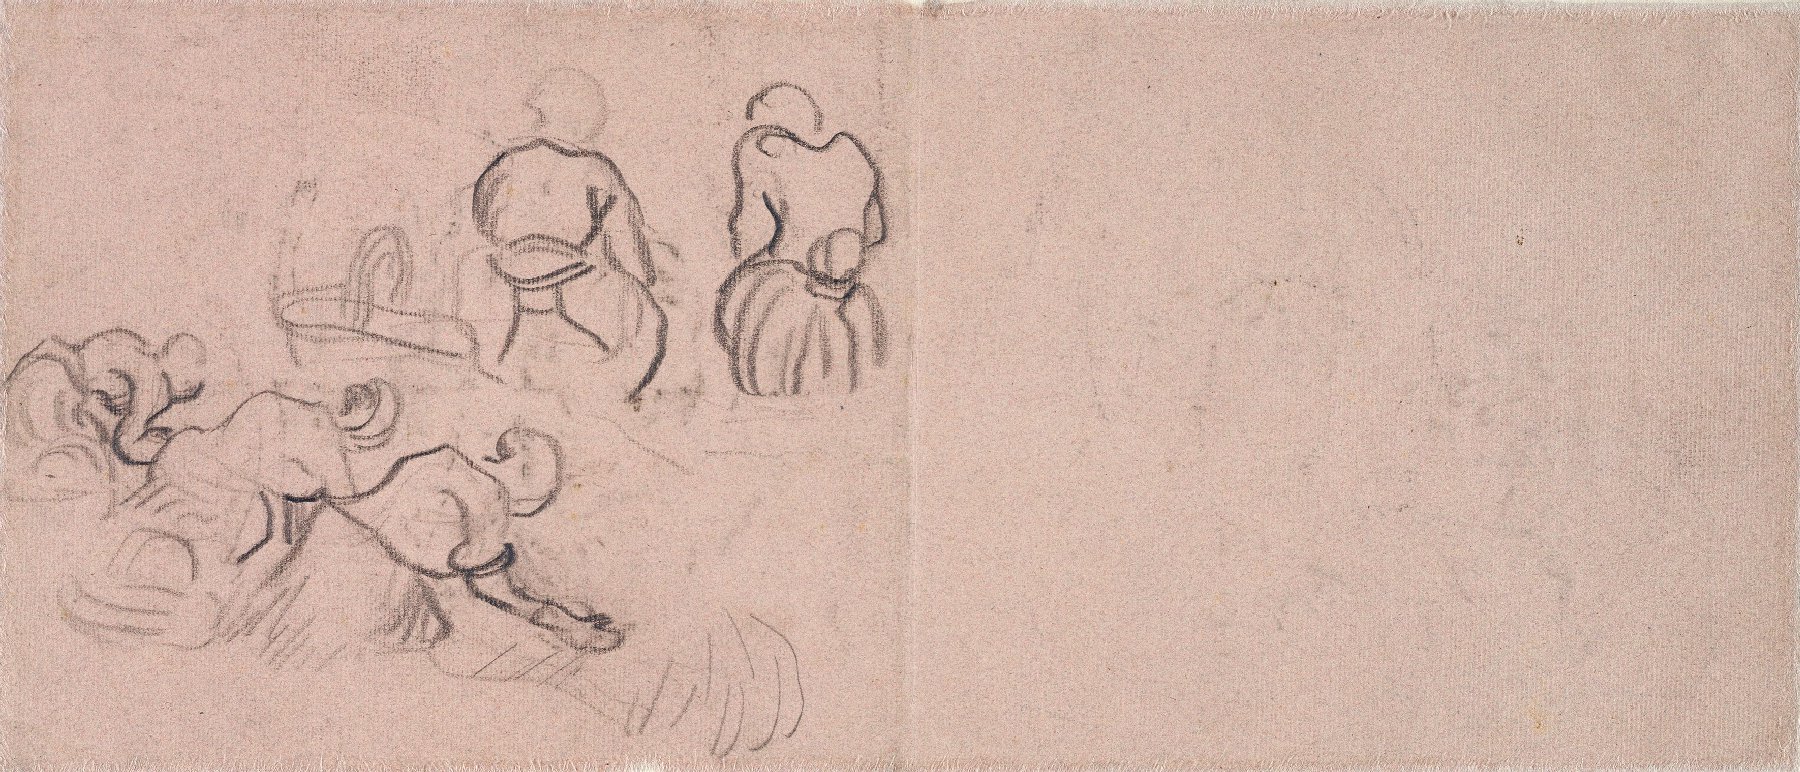 Schetsen van vrouwen die de was doen Vincent van Gogh (1853 - 1890), Auvers-sur-Oise, mei-juli 1890